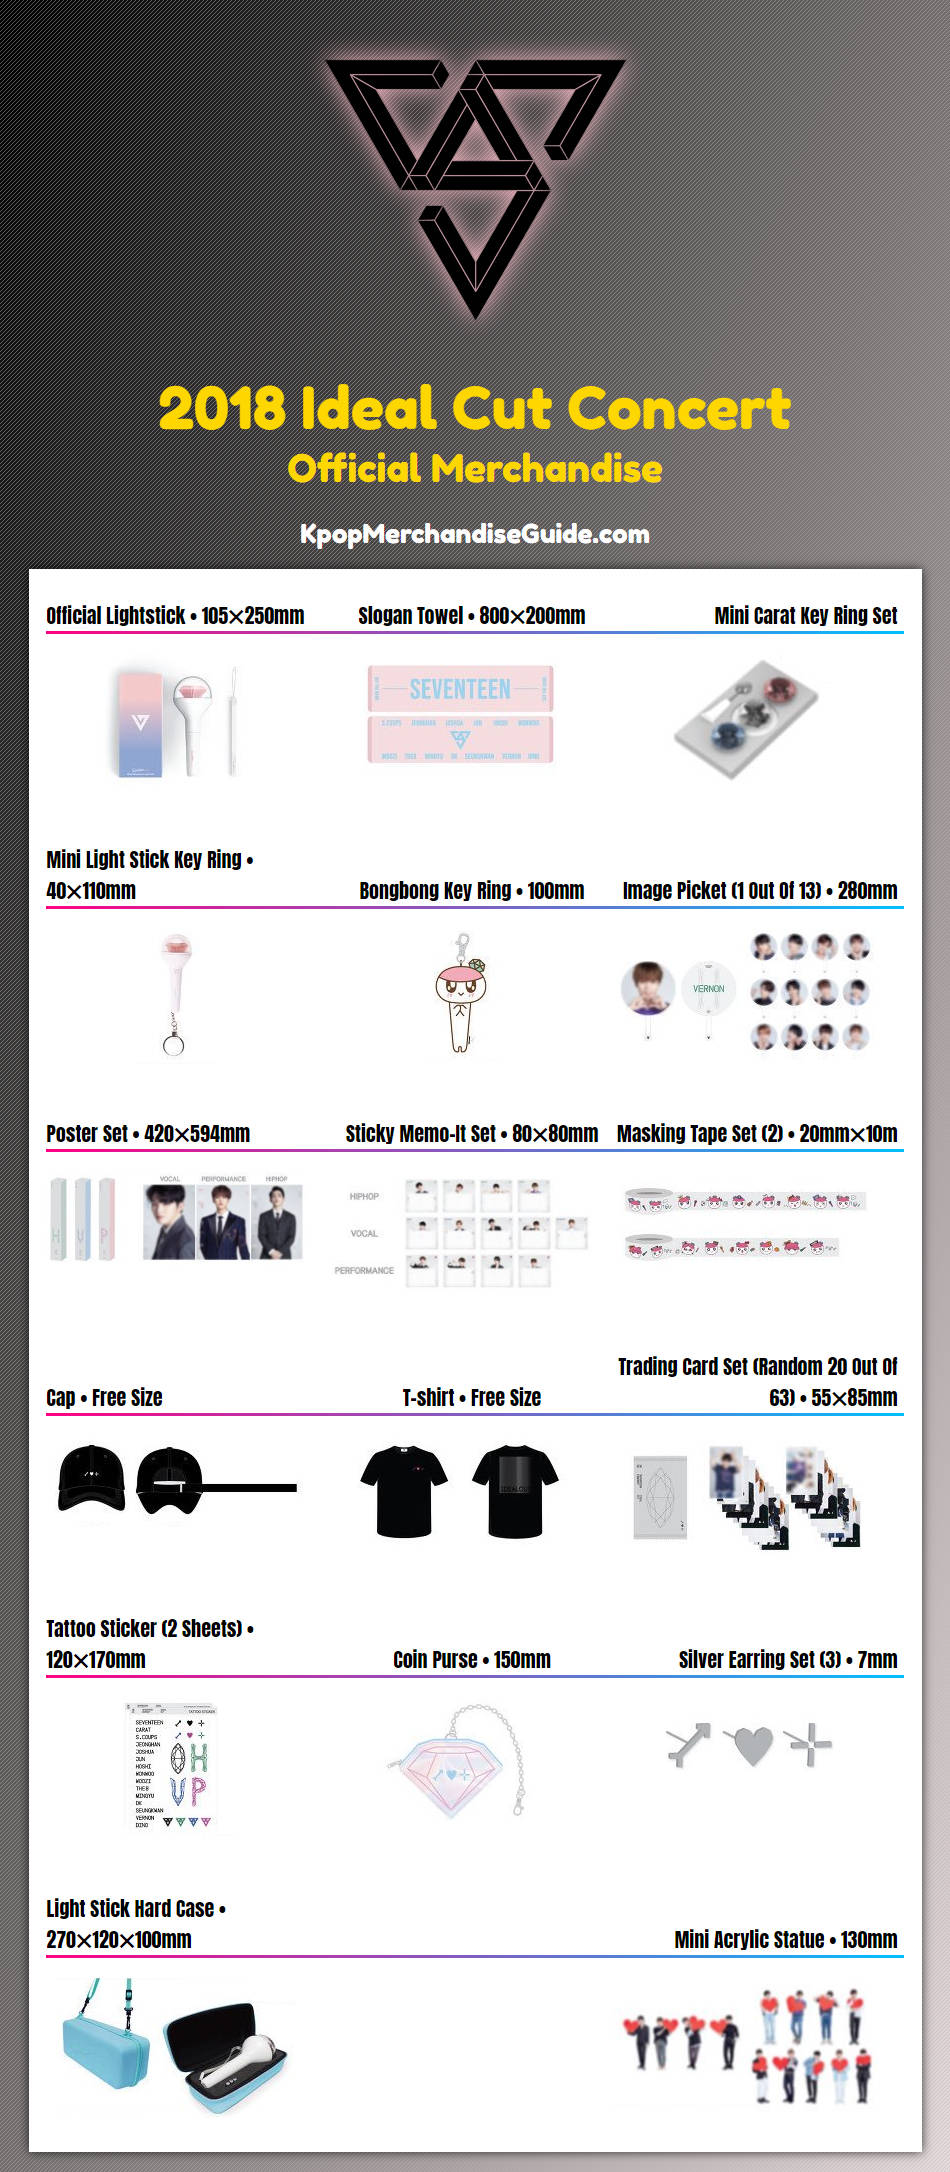 Seventeen 2018 Ideal Cut Concert Merchandise